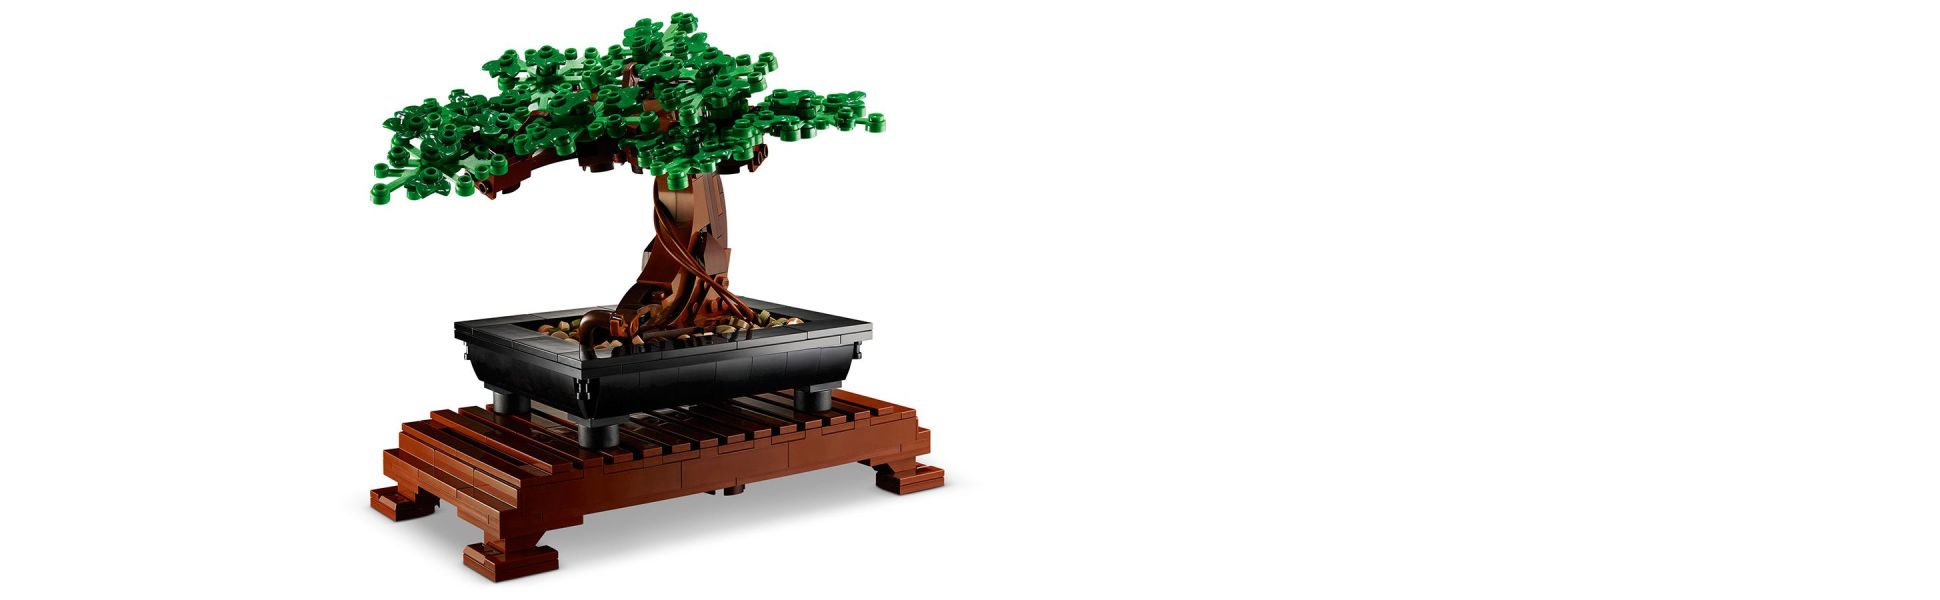 Lego 10281 Bonsai Tree Botanical Collection Sealed WORLDWIDE FREE SHIPPING